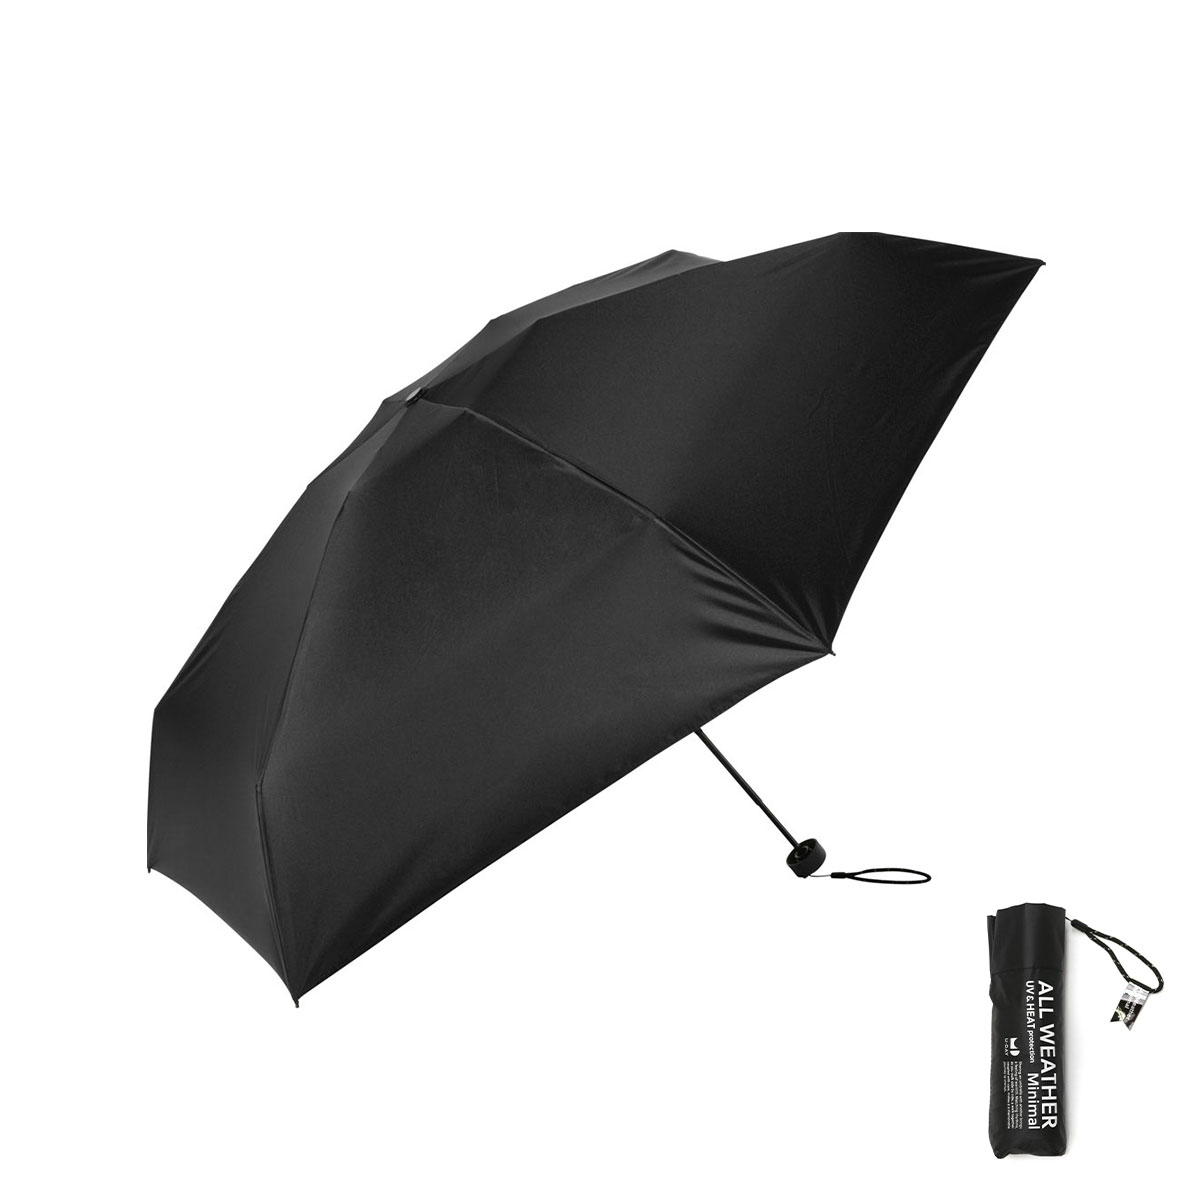 U-DAY 傘 折りたたみ傘 日傘 メンズ レディース 軽量 完全遮光 ユーデイ 小さい 晴雨兼用 ...